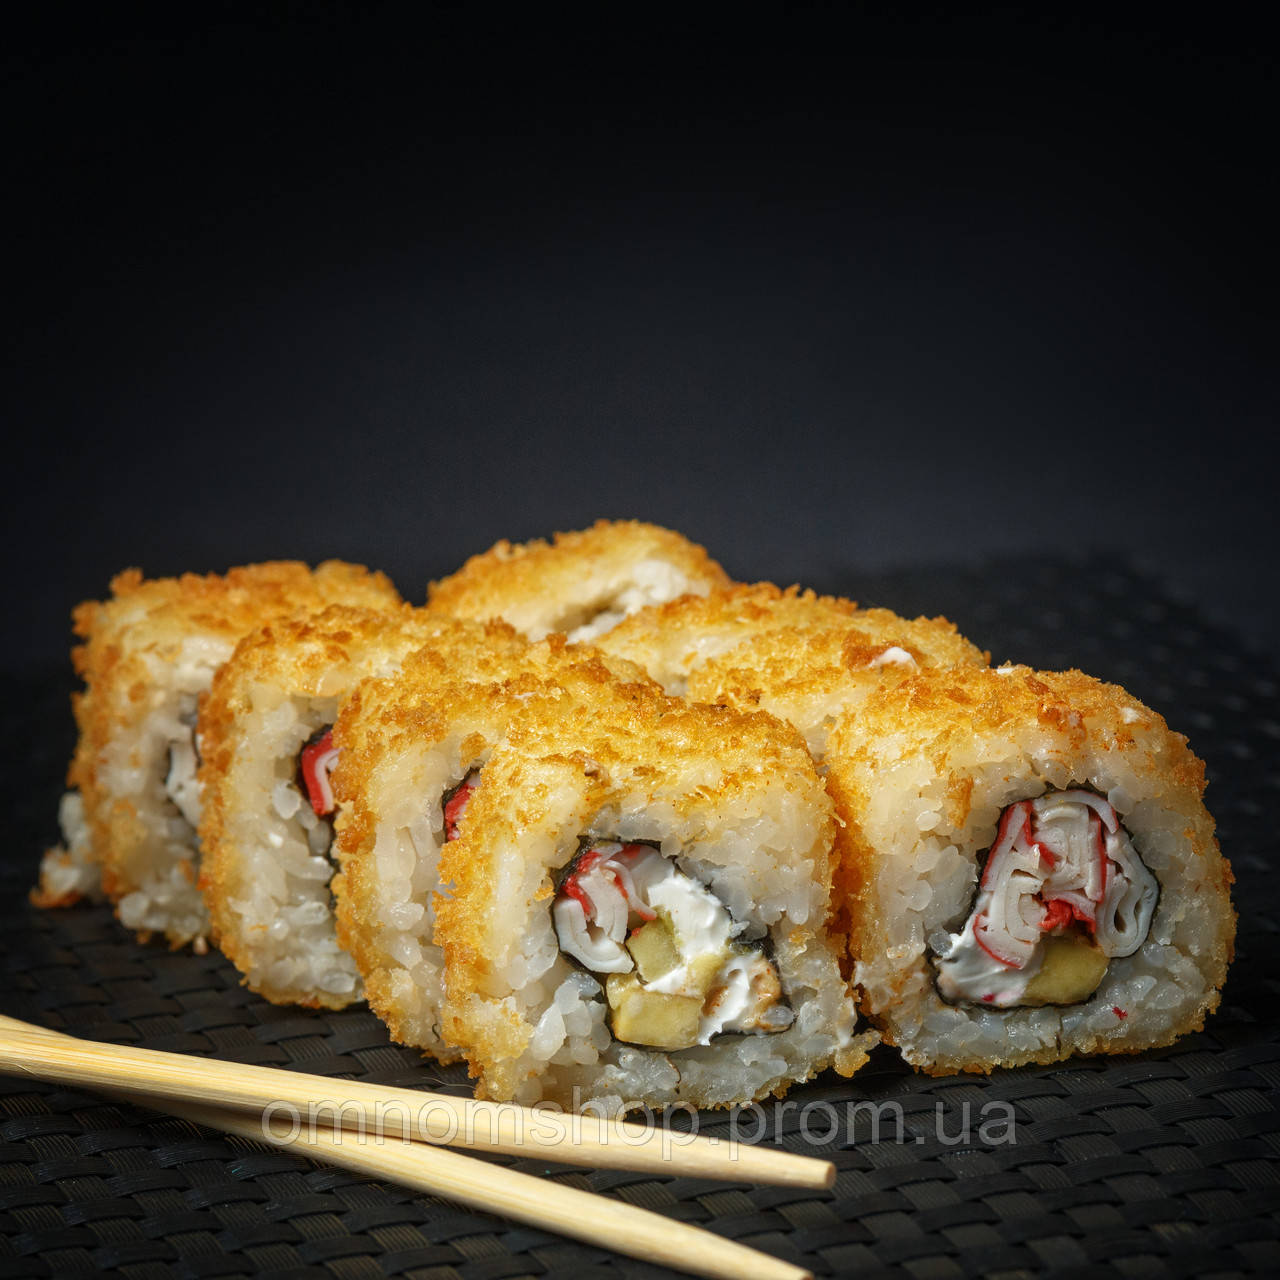 Запеченный суши название фото 65